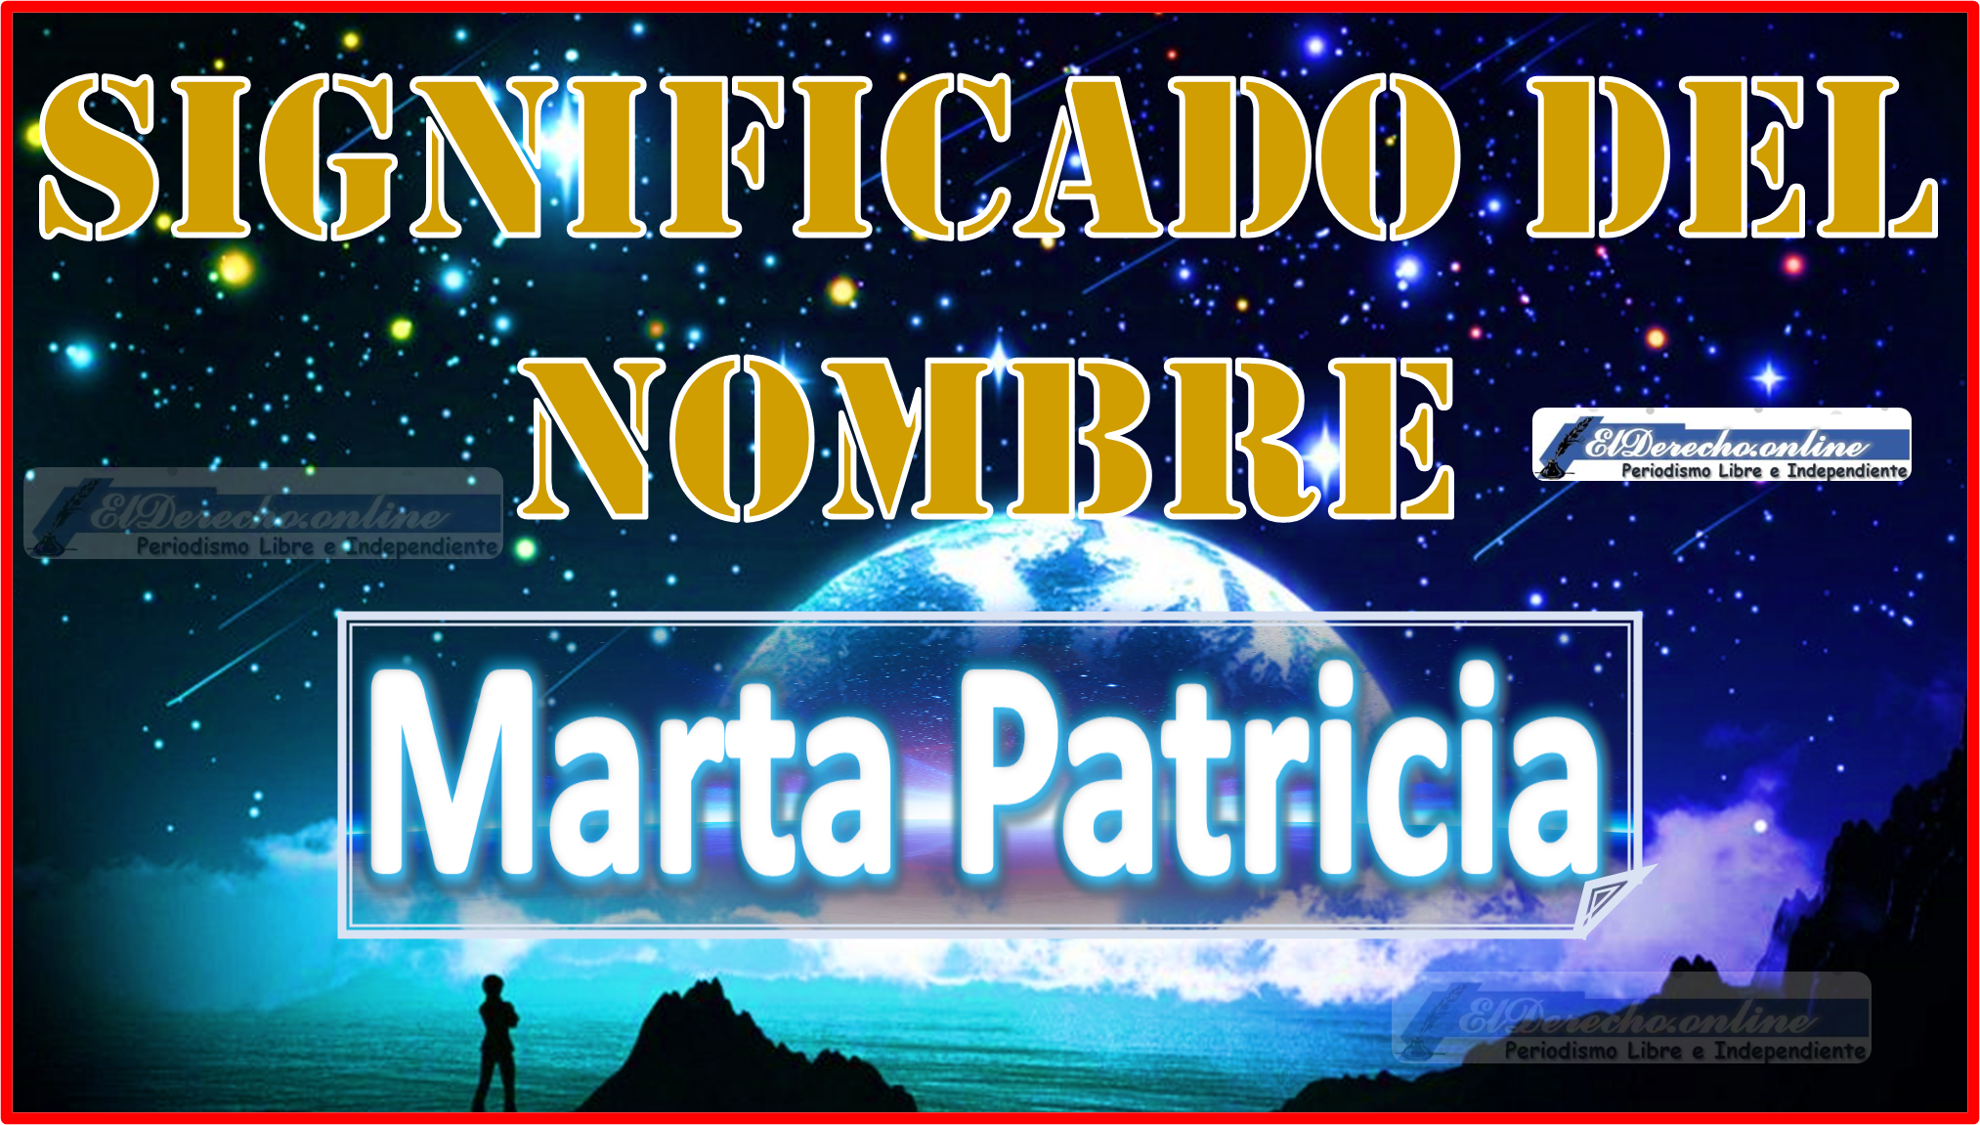 Significado del nombre Marta Patricia, su origen y más